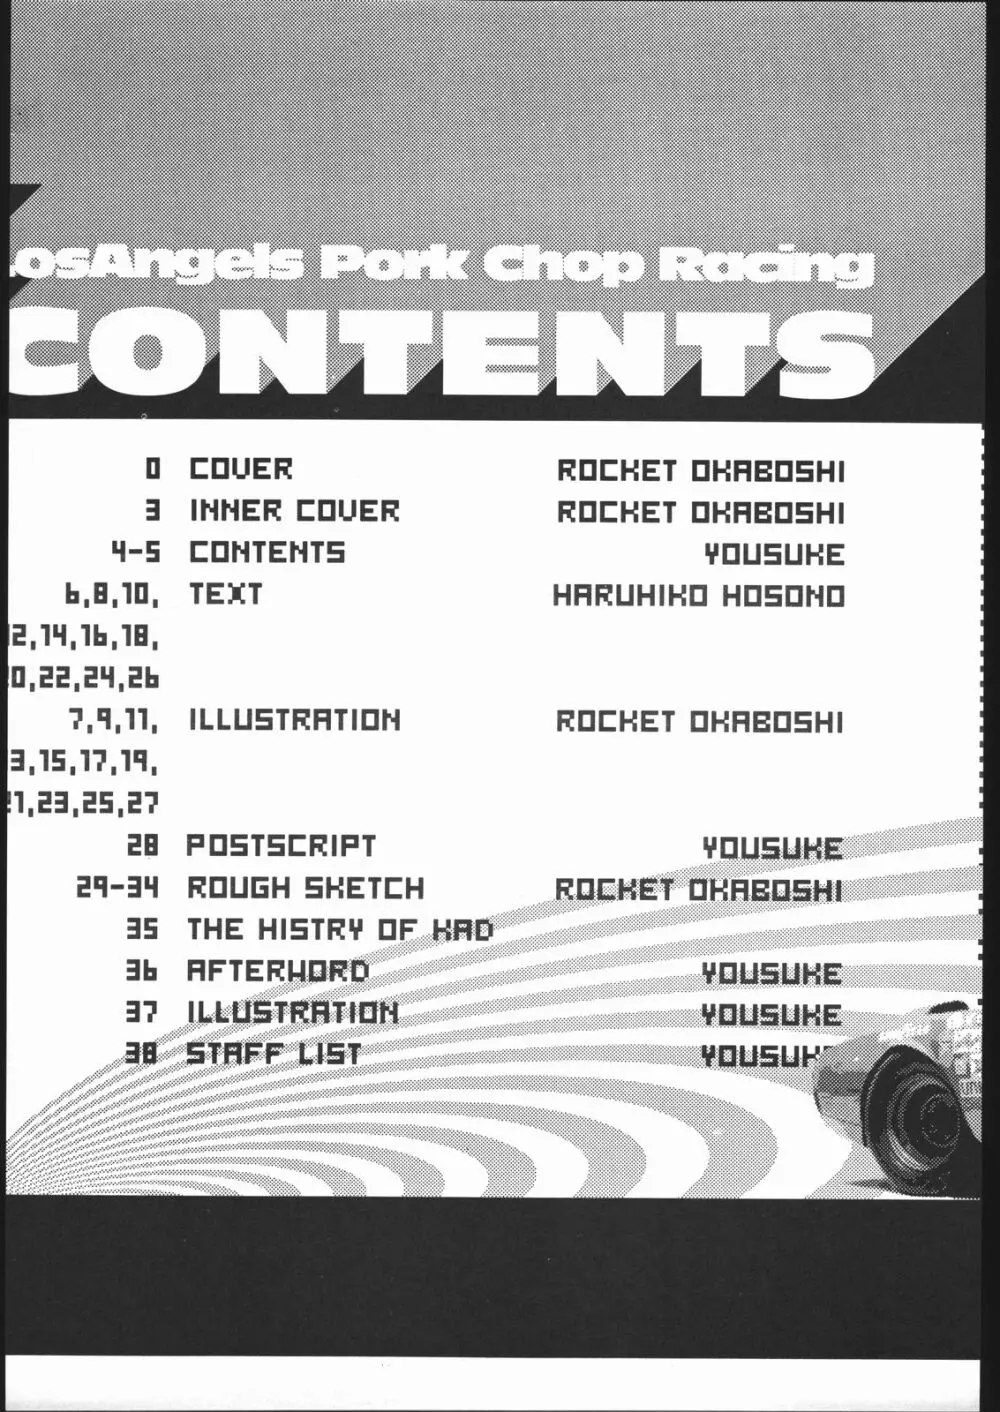 LosAngels Pork Chop Racing Page.5